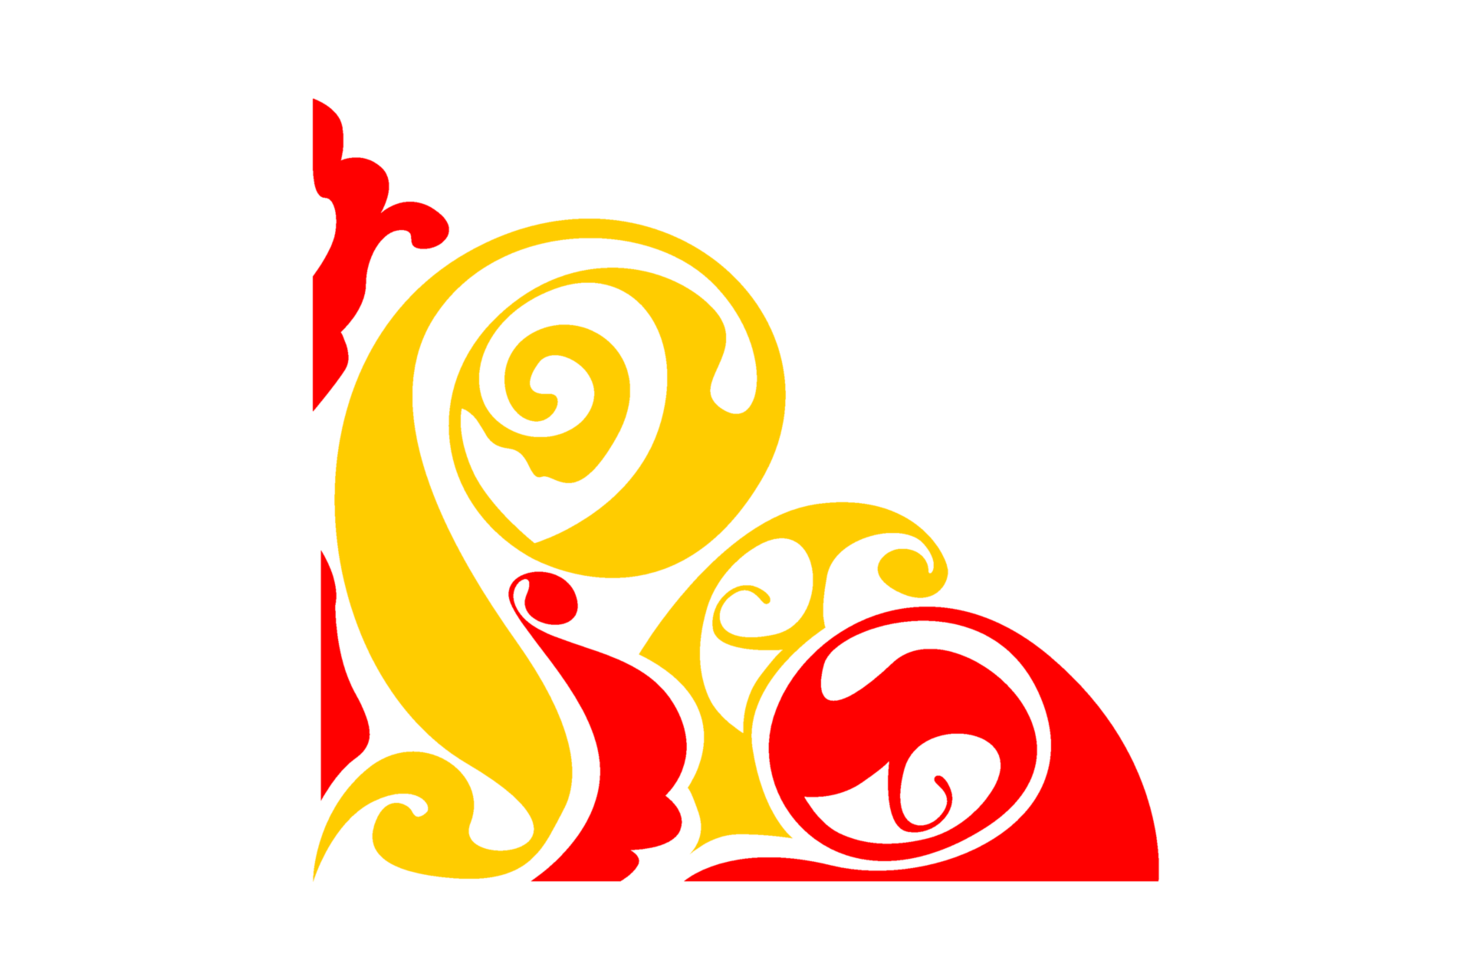 diseño de borde de adorno rojo y amarillo png